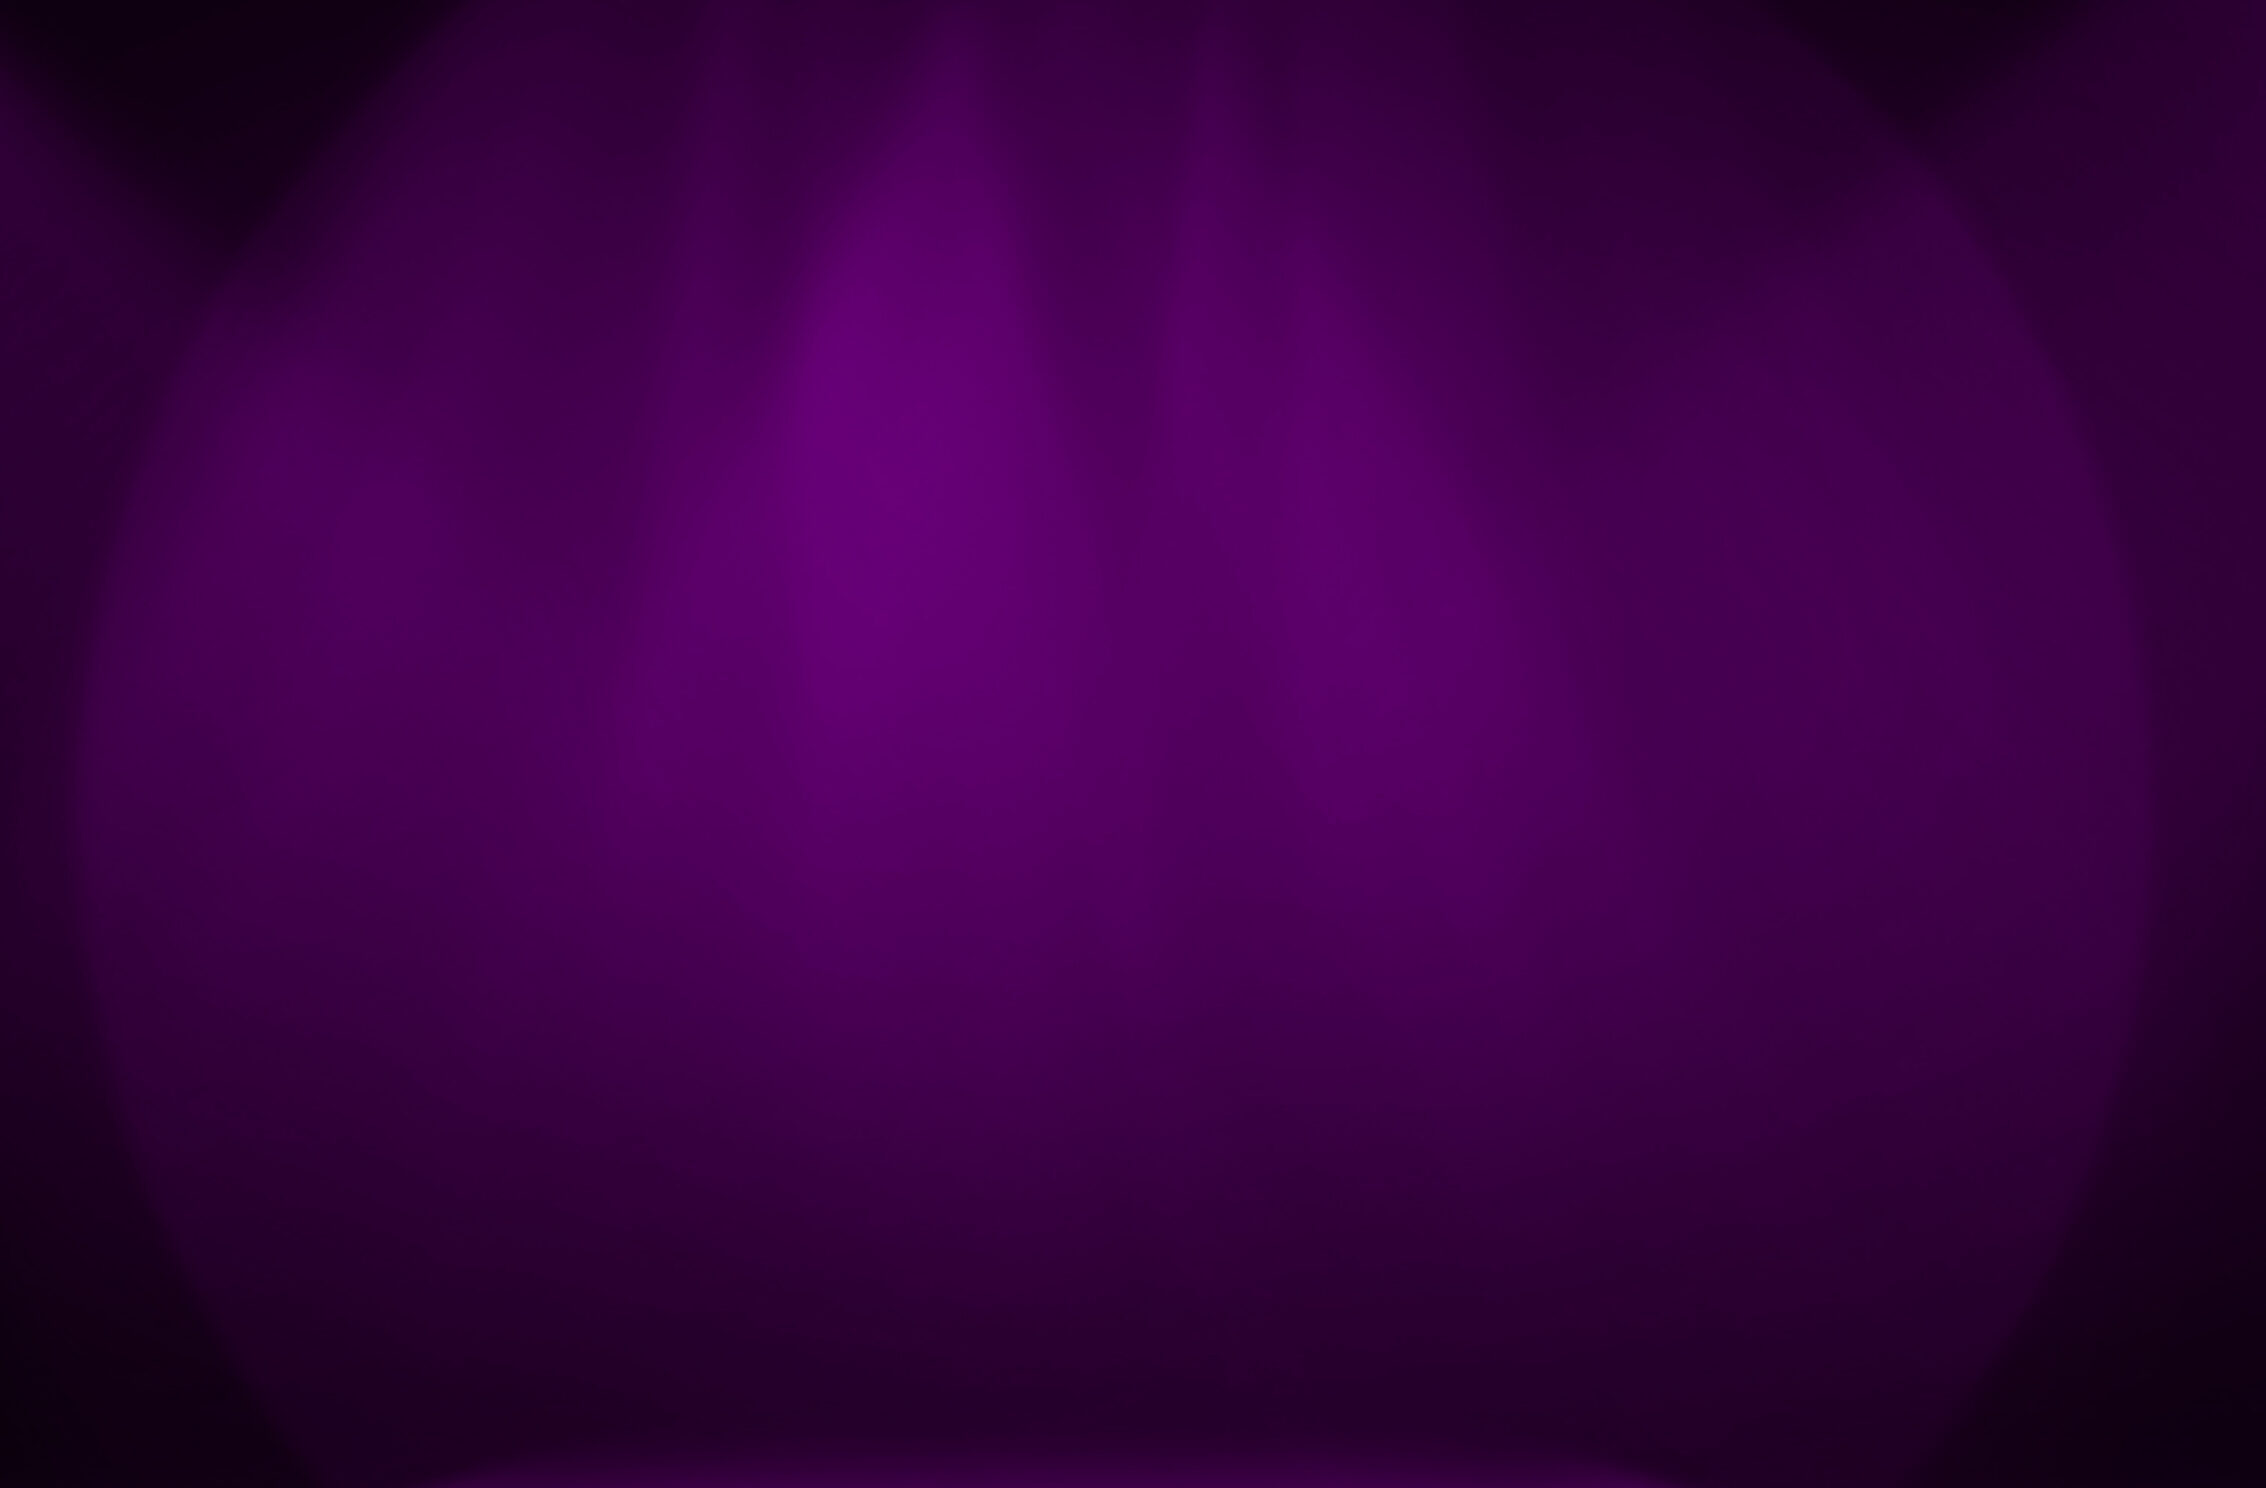 2266x1488 wallpaper Purple Stage Decoration iPad Wallpaper 2266x1488 pixels resolution